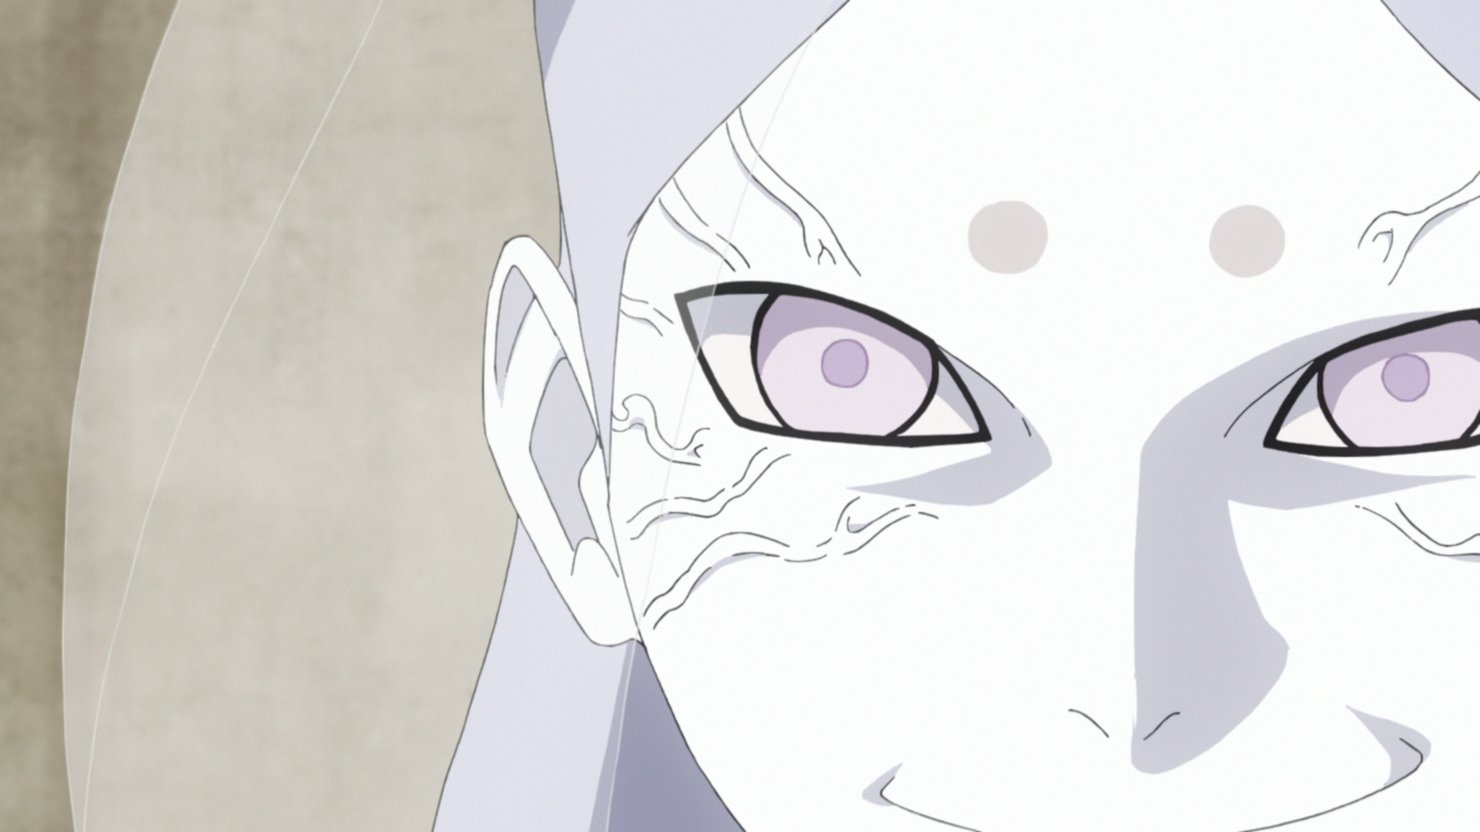 Mundo Boruto on X: No episódio 62, vemos Shinki bem incomodado por não  ajudar contra os Otsutsukis. Sendo um personagem com ótimas habilidades,  acham que o filho do Gaara é mal aproveitado?